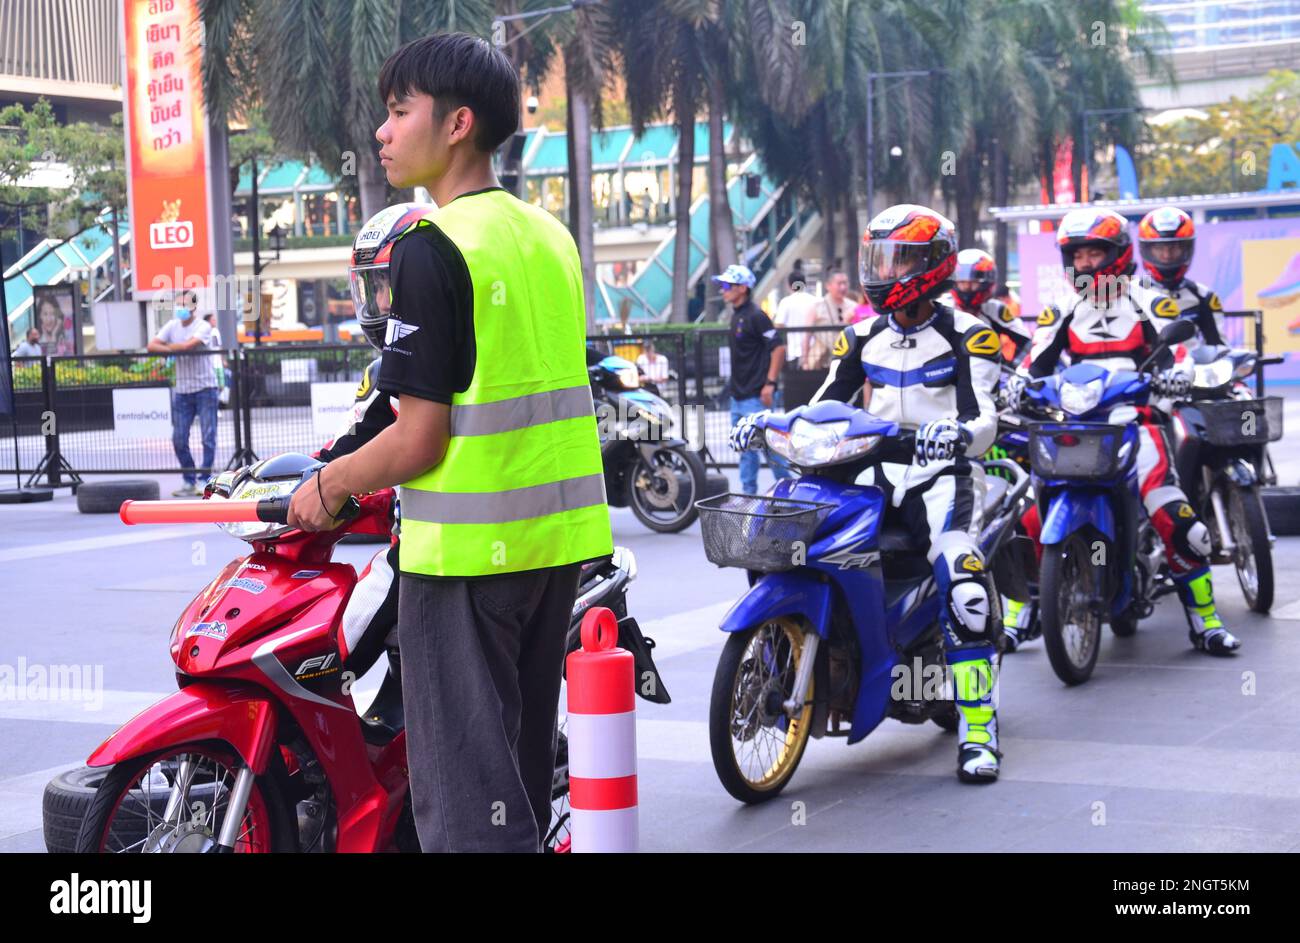 Junge Männer nehmen am 19. Februar 2023 an einer Motorradveranstaltung Teil, die vom thailändischen National Sports Development Fund (NSDF) im Einkaufszentrum Central World in Bangkok, Thailand, Asien organisiert wird. Junge männliche Motorradfahrer zeigen die sichere Nutzung eines Motorrads. Thailands Straßen haben die meisten Todesfälle in Südostasien mit der neunthöchsten Rate von Verkehrstoten in der Welt mit 32,7 pro 100.000 Menschen pro Jahr, sagt die Weltgesundheitsorganisation. Auf Thailands Straßen sterben jedes Jahr etwa 20.000 Menschen. Stockfoto